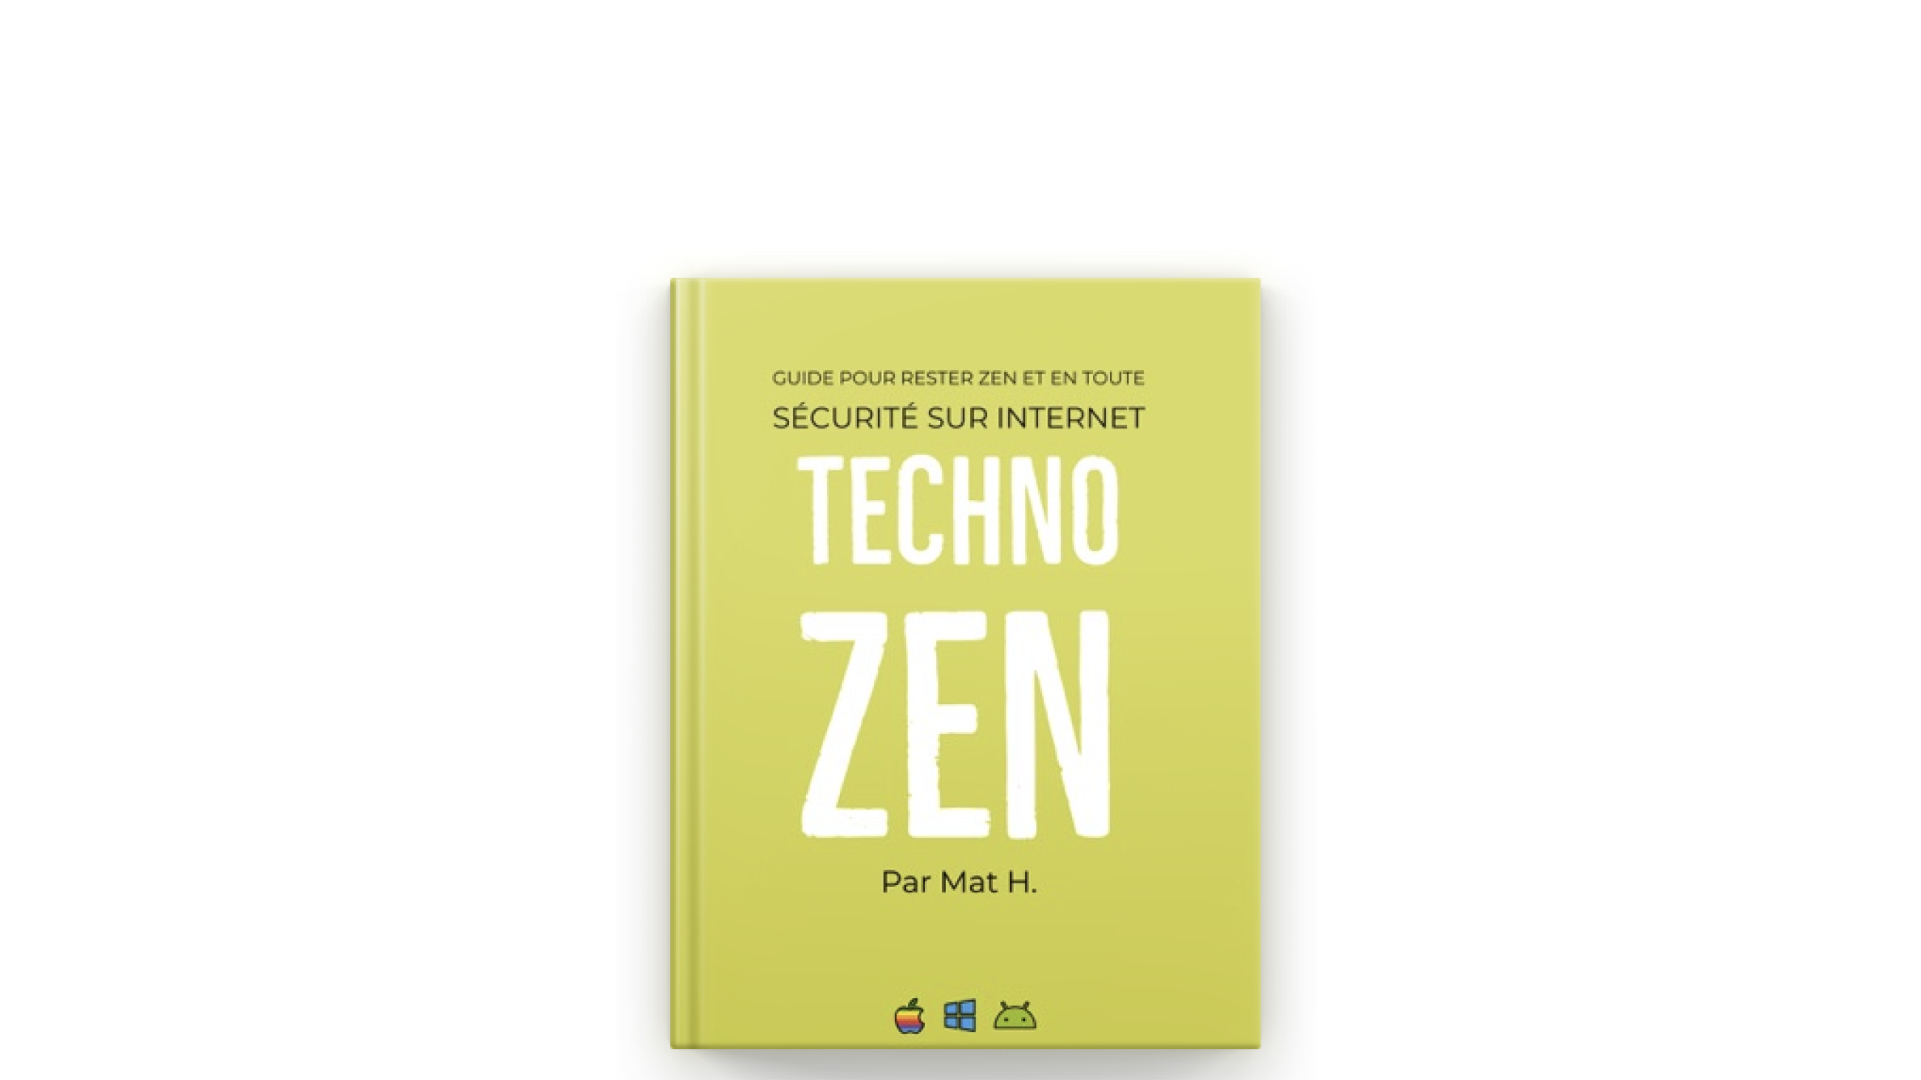 Techno Zen and Auto-edition